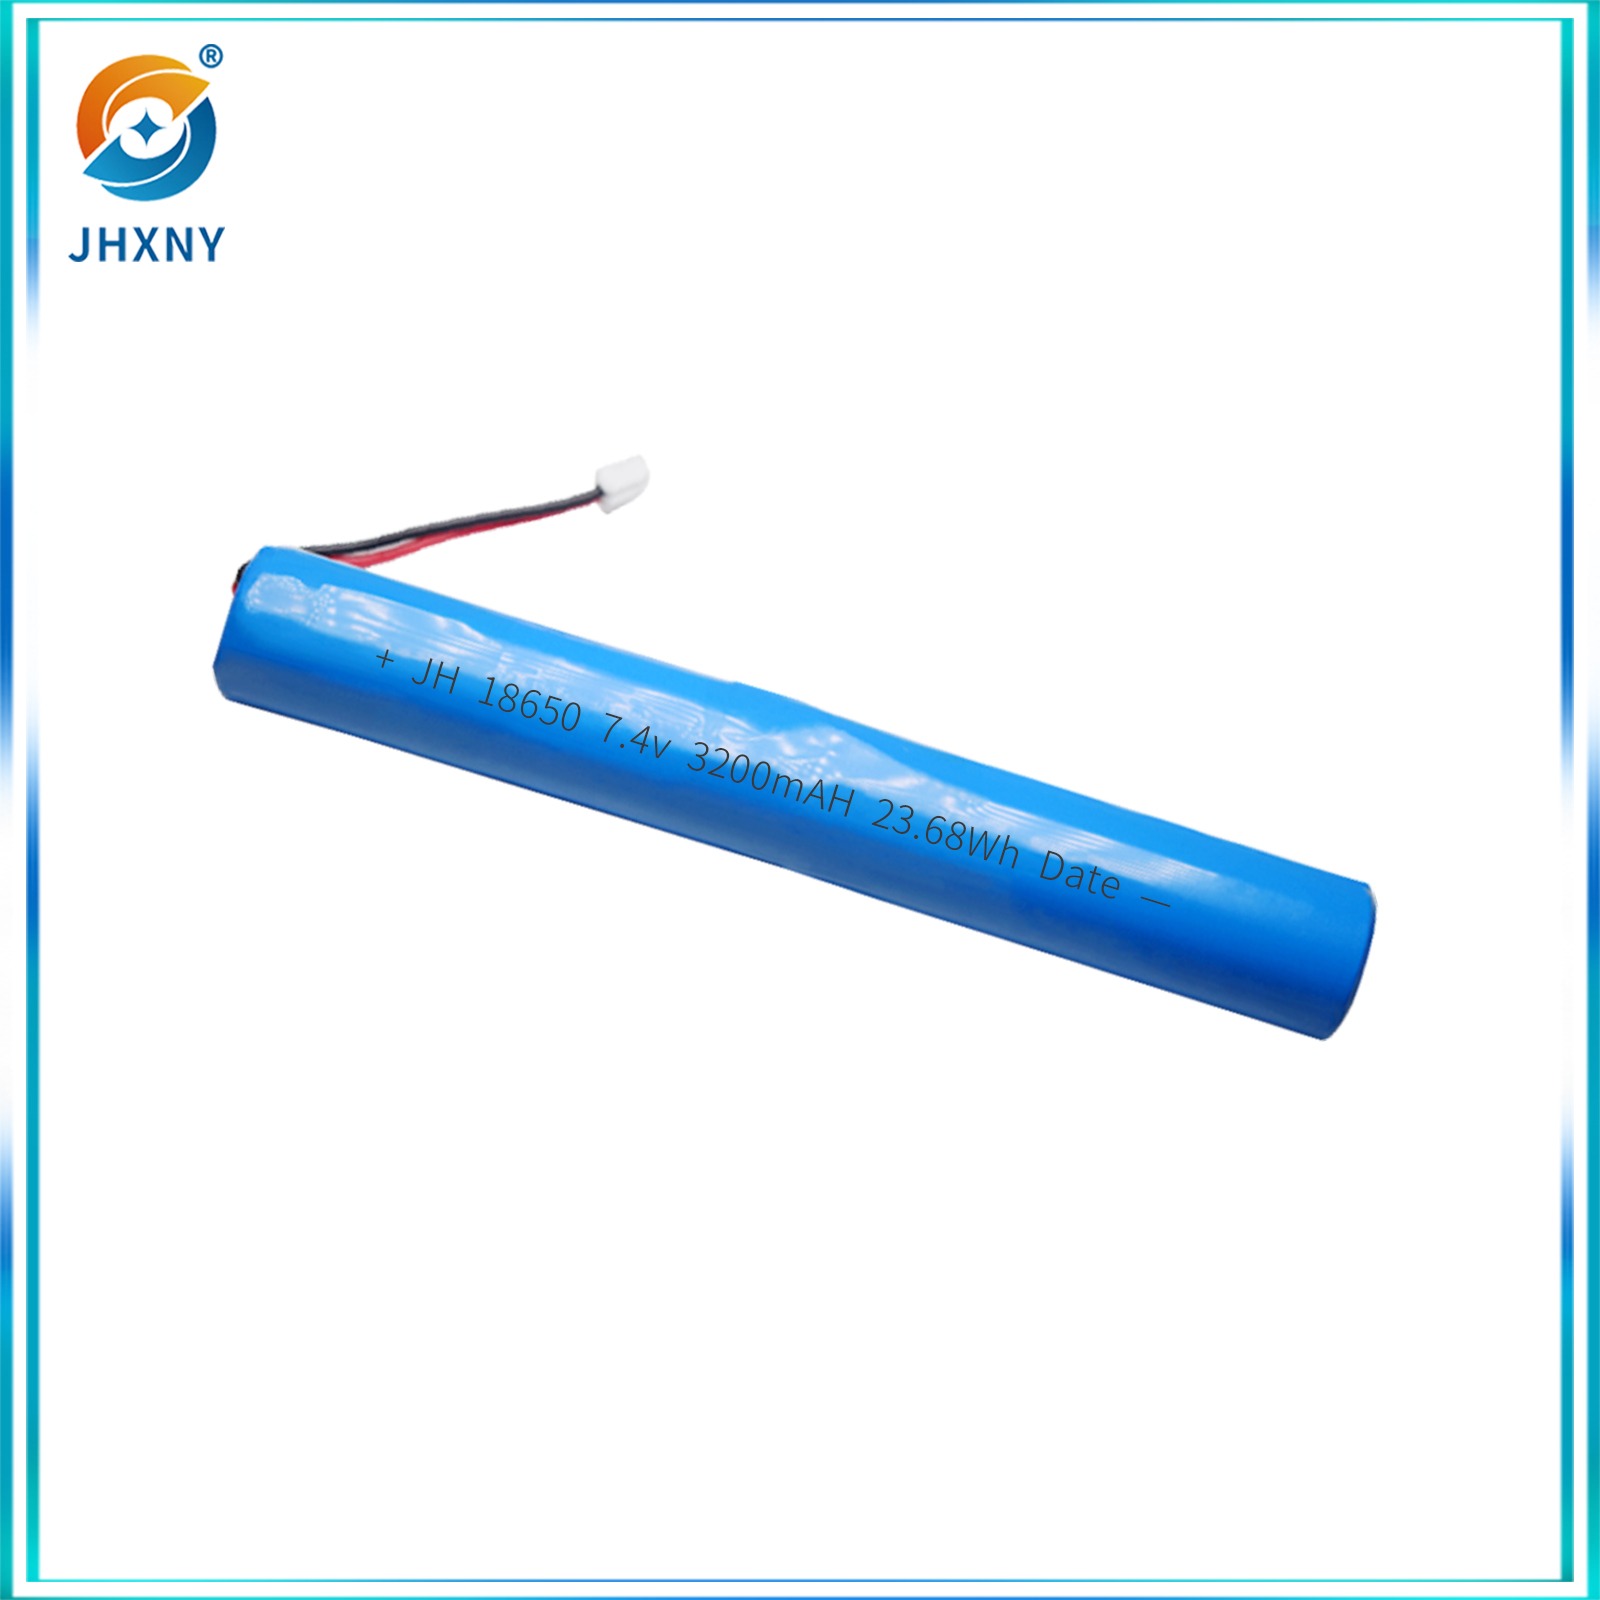 عصا التسخين الخاصة بأجهزة كشف الاهتزازات الخاصة بطارية الليثيوم الأسطوانية JH18657.4 V3200MAH.